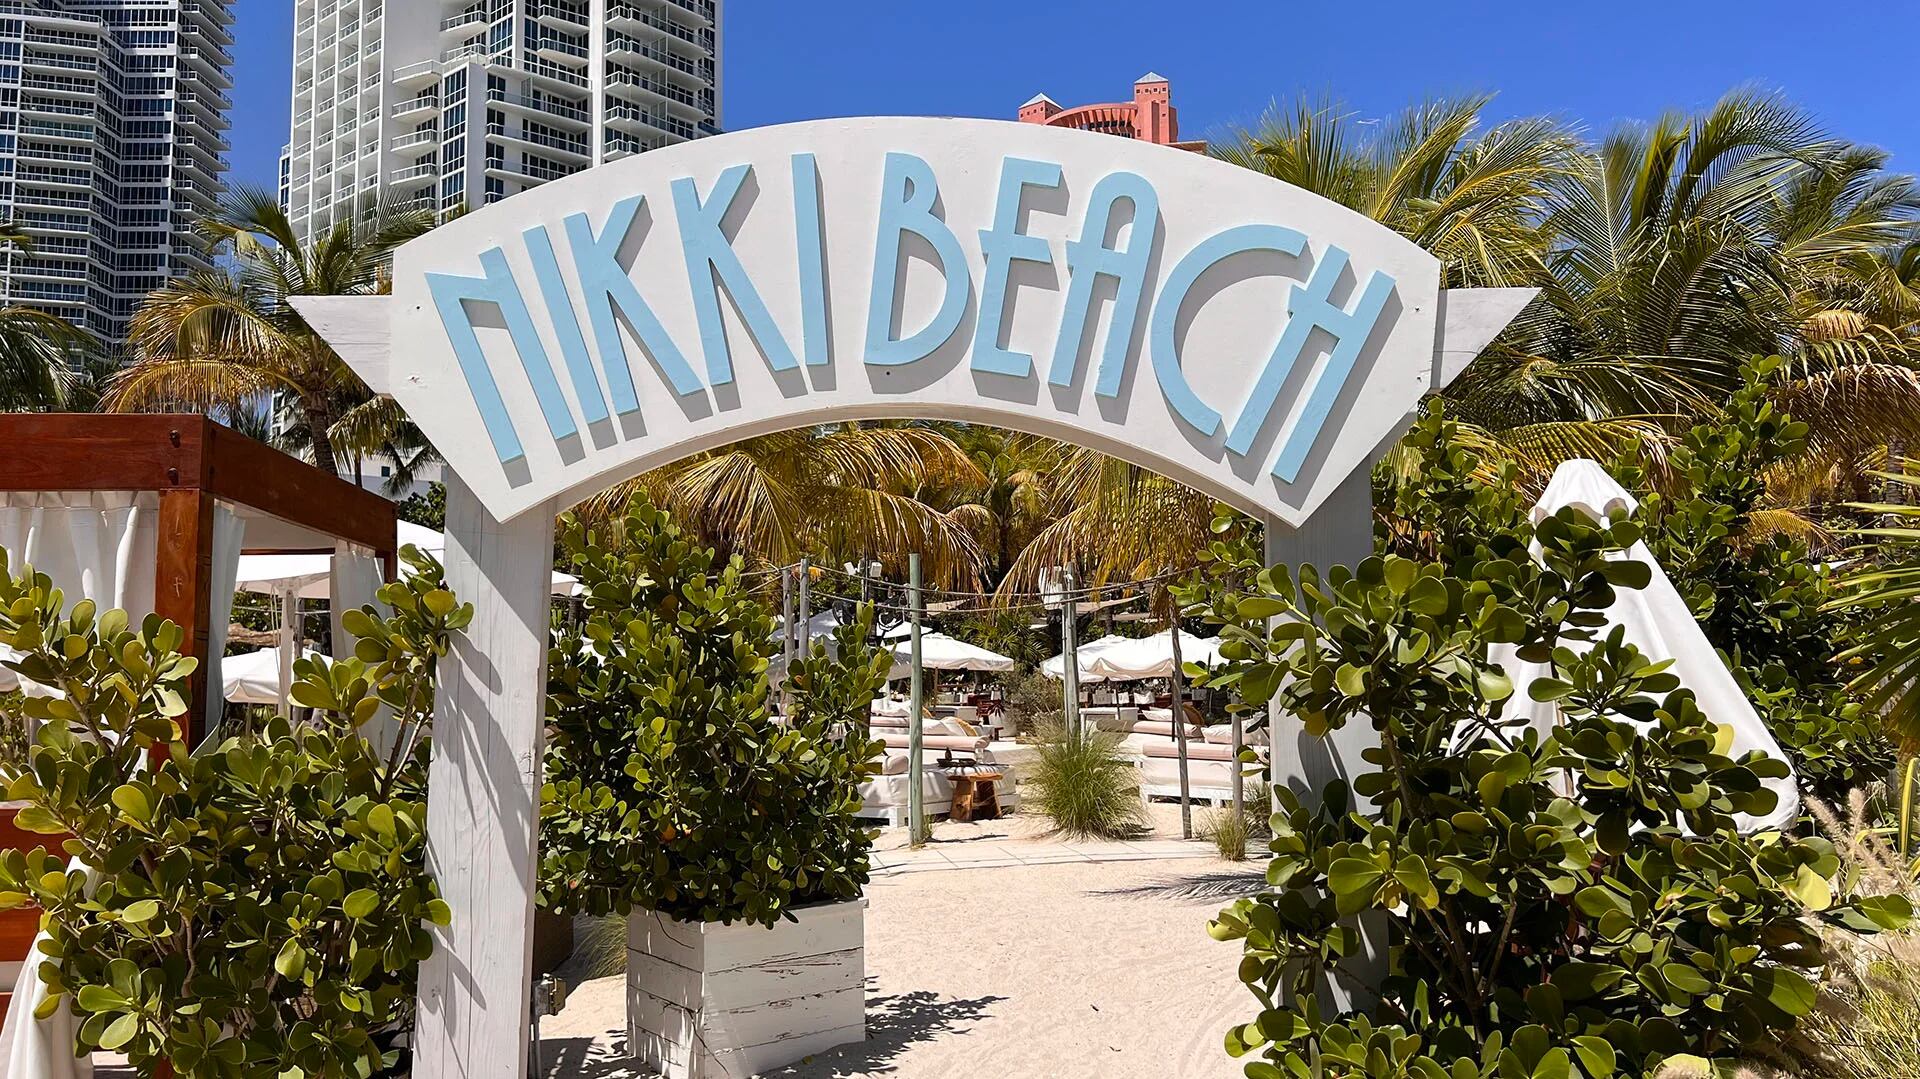 La batalla por el futuro de Nikki Beach en Miami